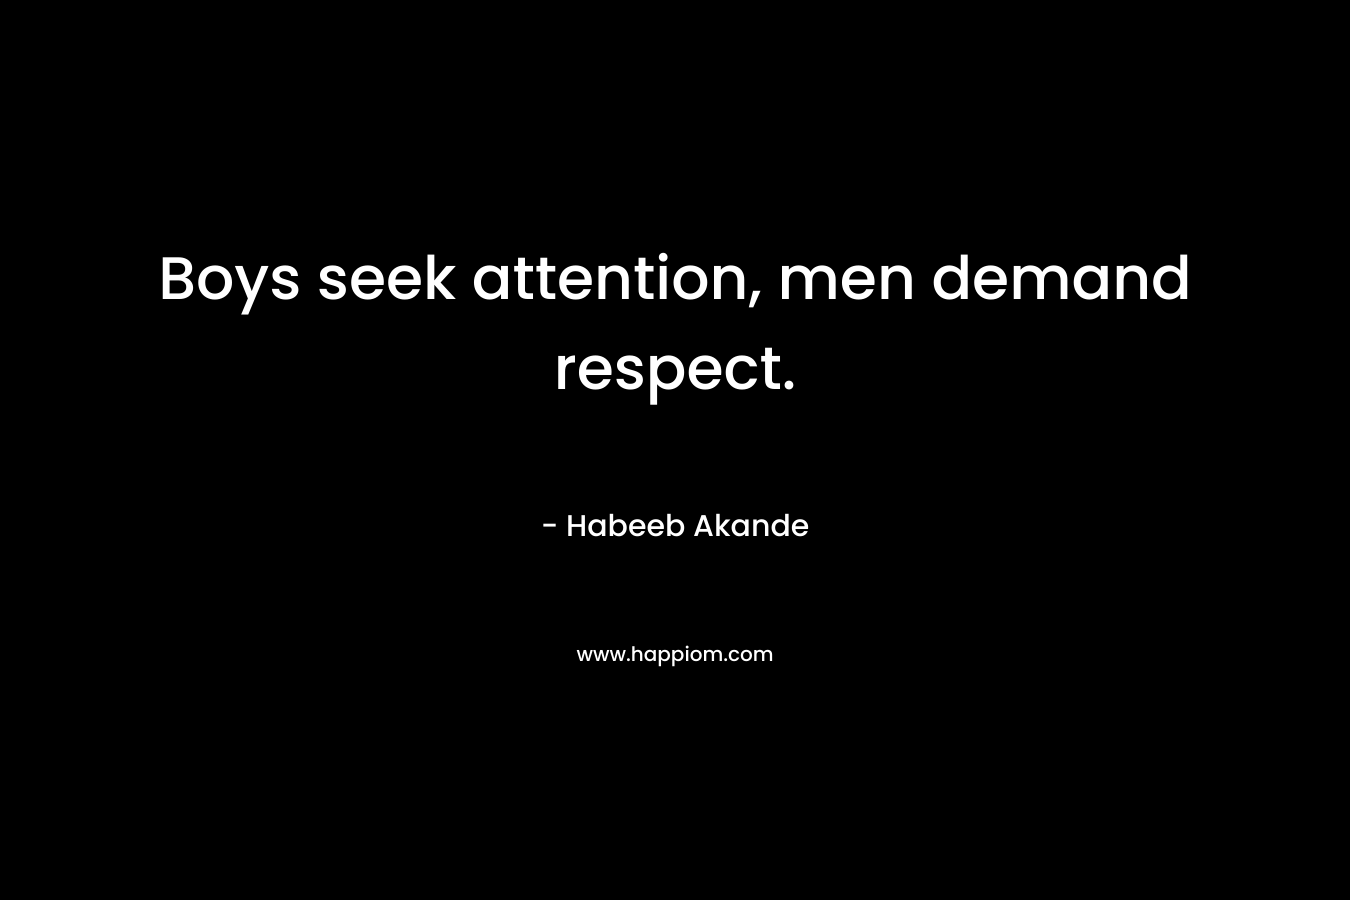 Boys seek attention, men demand respect.